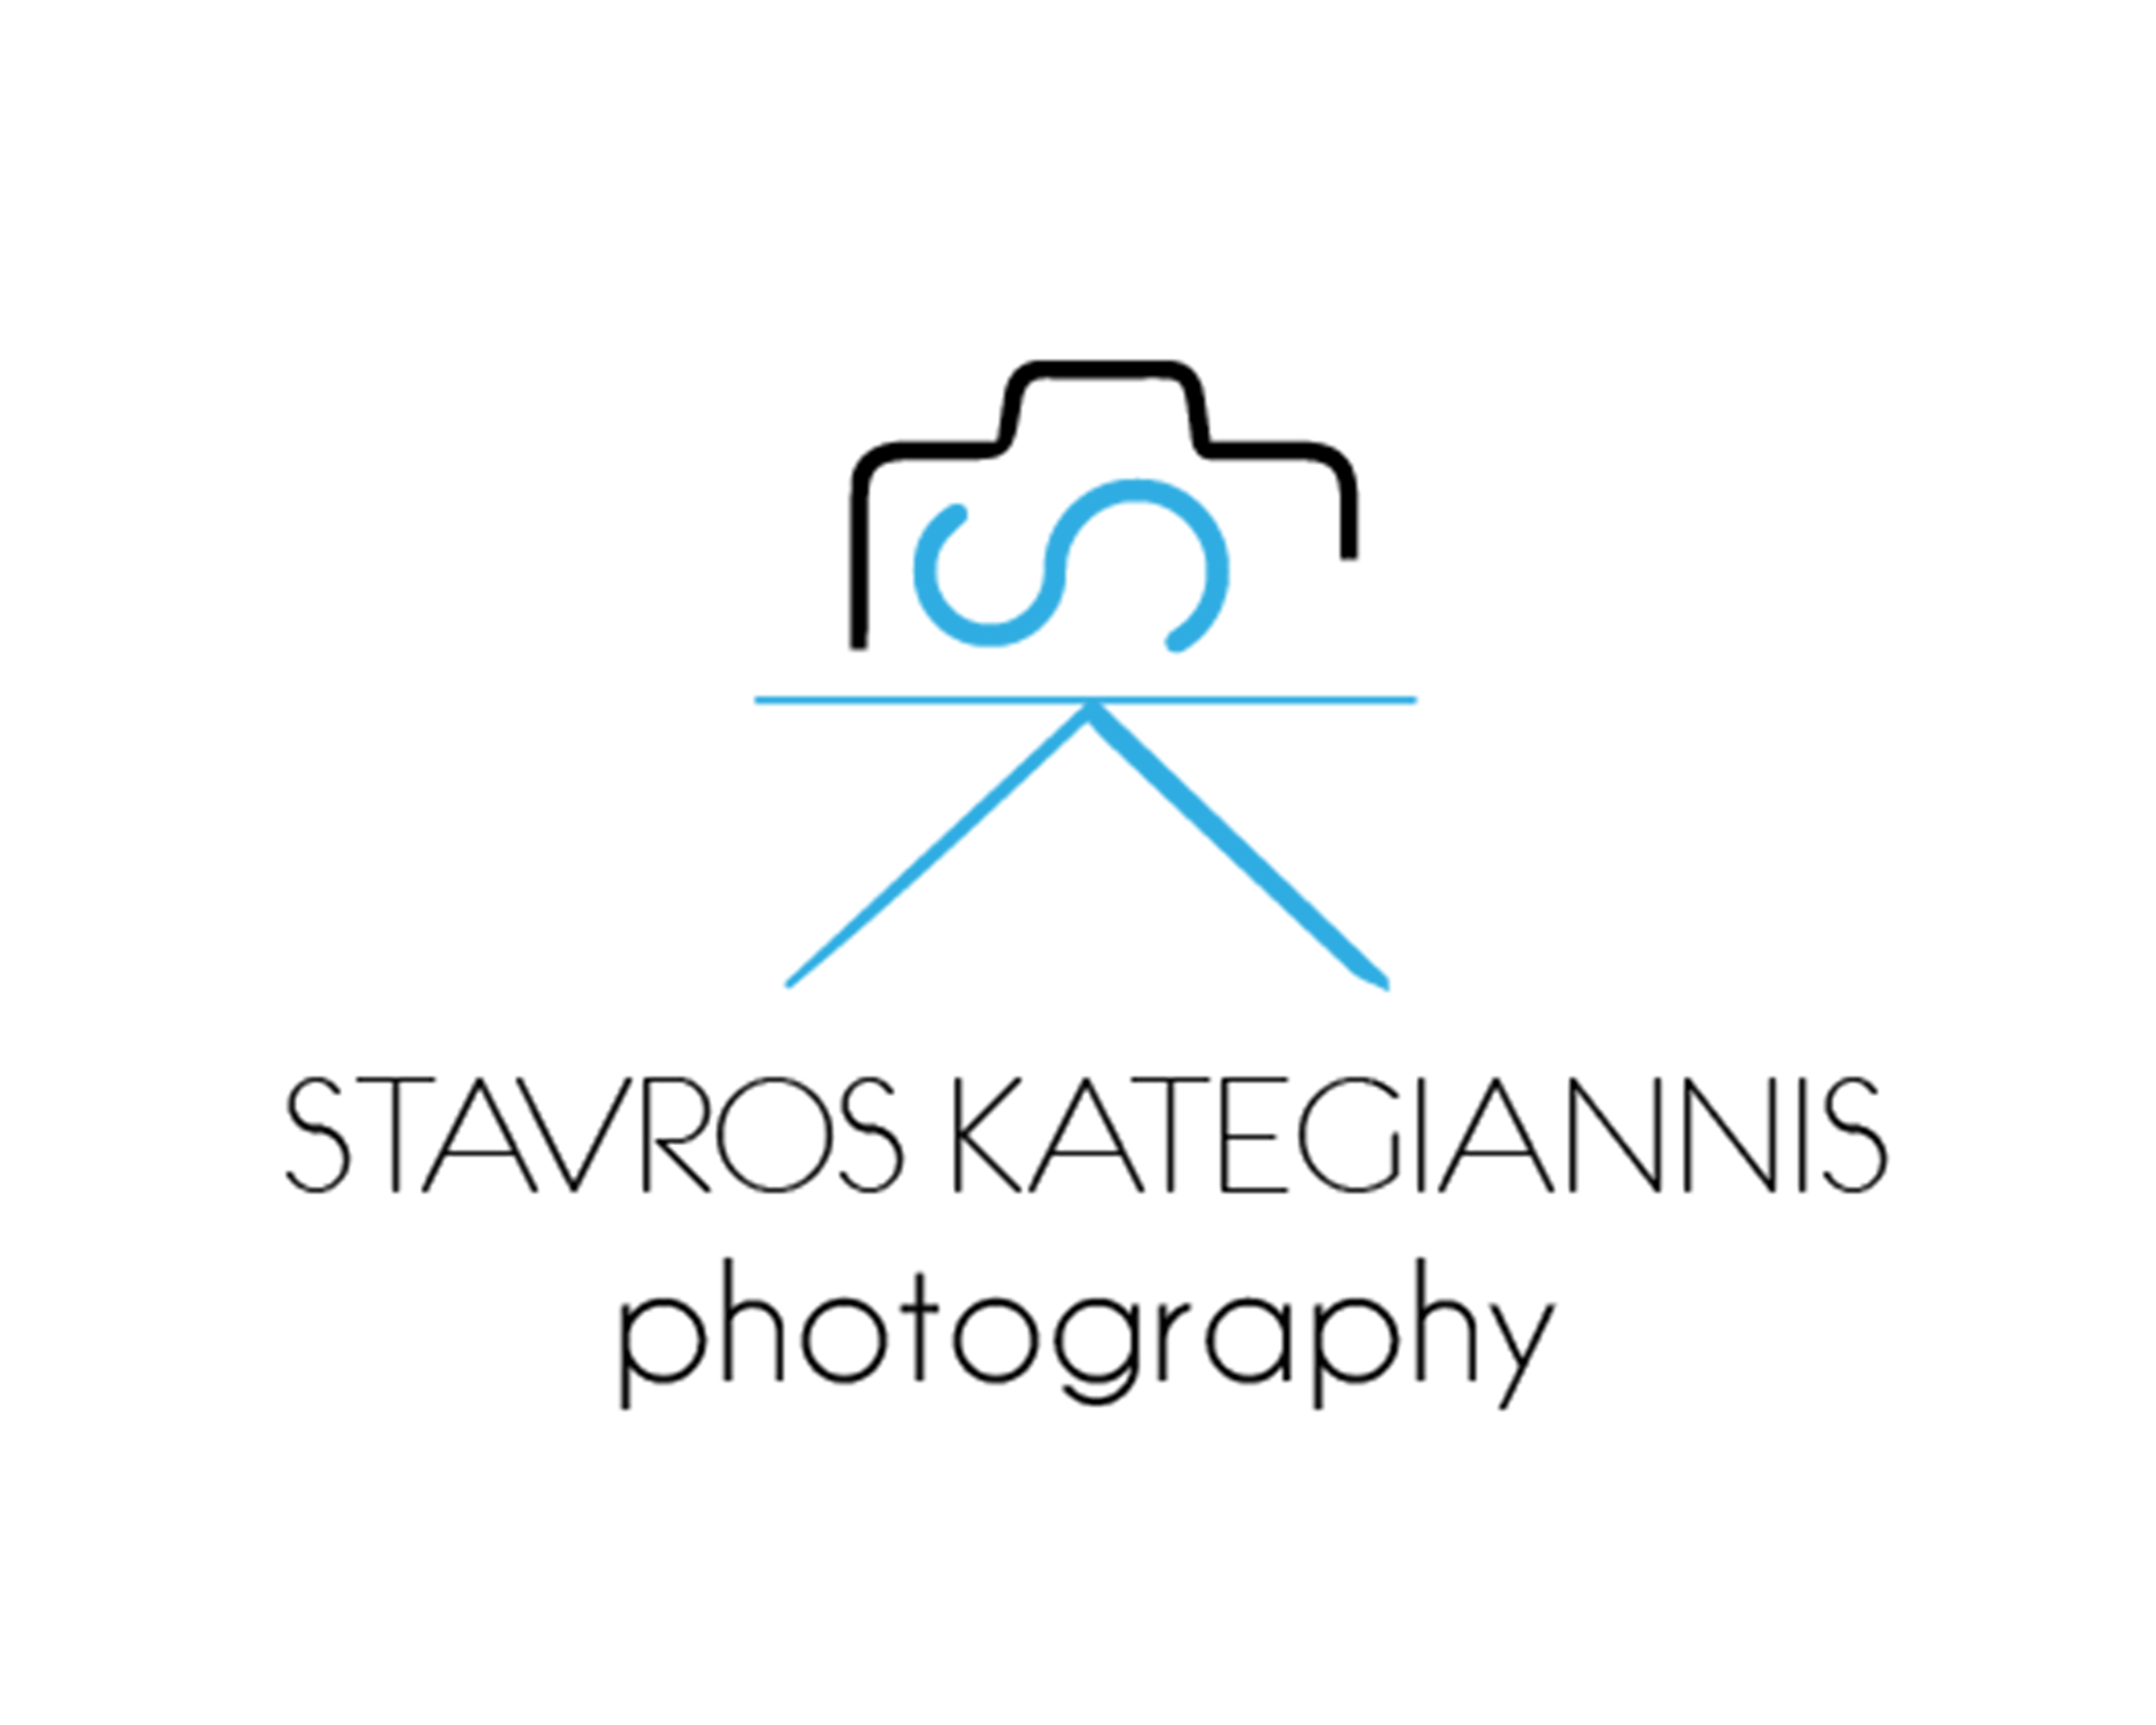 Kategiannis-logo-blue-and-black-letters.jpg